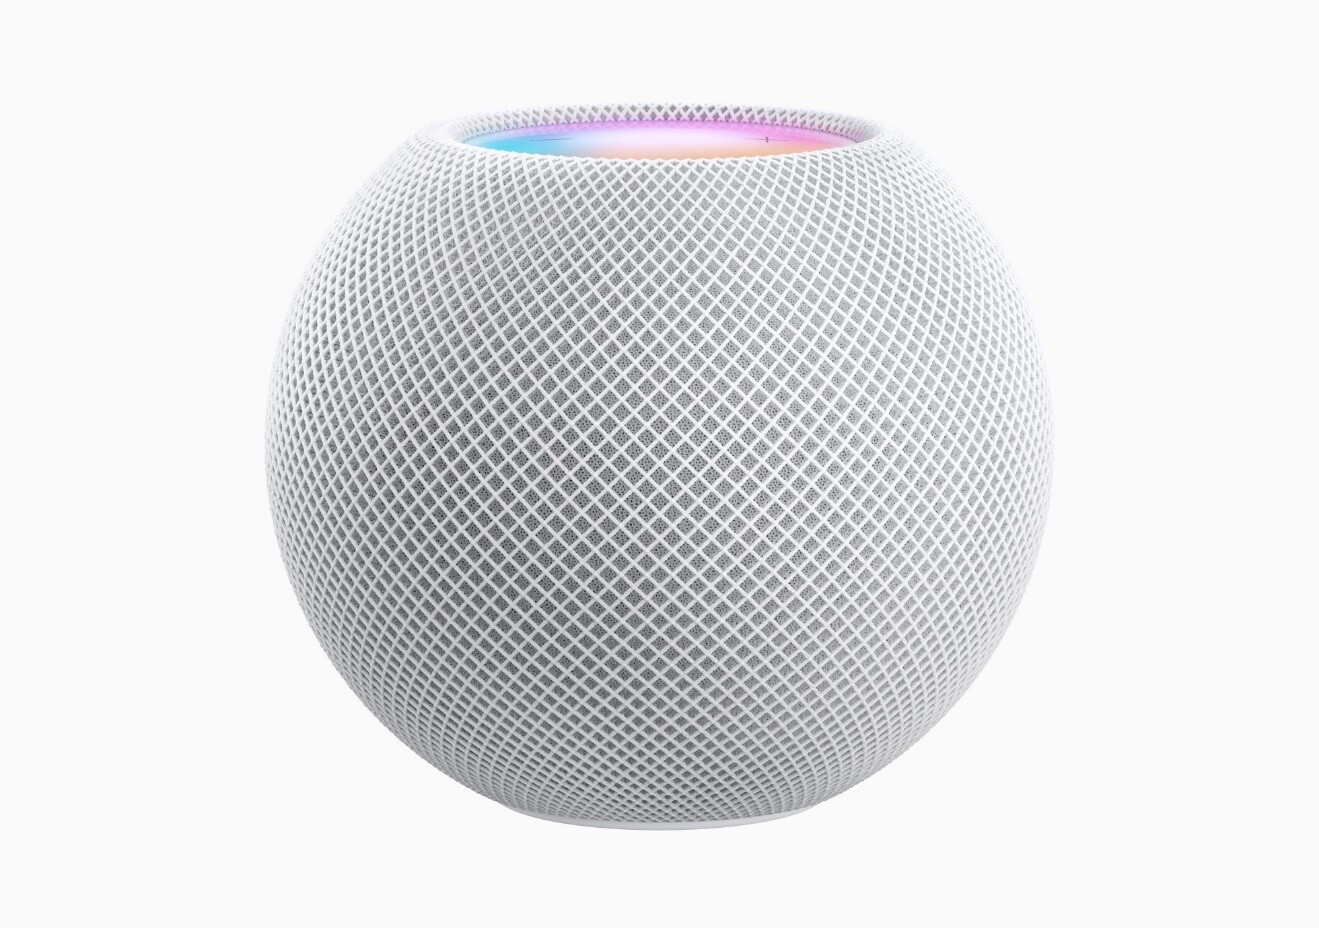 苹果HomePod 现可通过 Siri 唤醒 Apple Music、QQ 音乐及网易云音乐